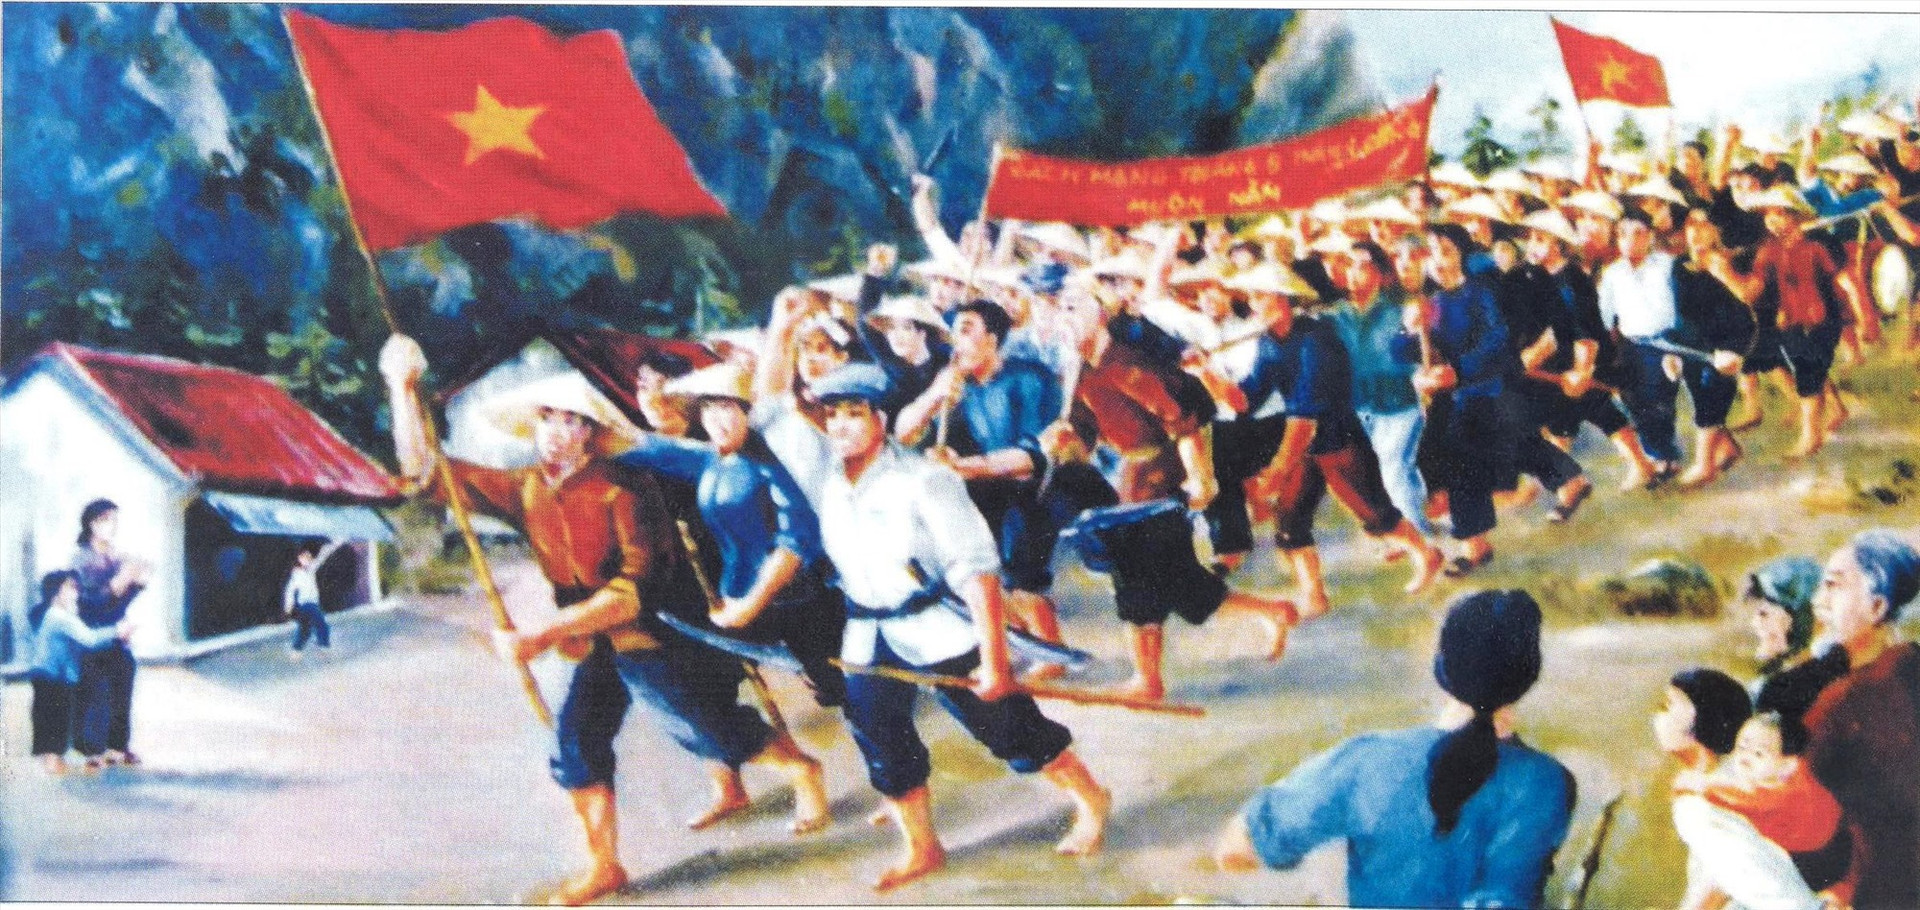 Nhân dân Quảng Nam xuống đường khởi nghĩa giành chính quyền trong Cách mạng Tháng Tám năm 1945. Tranh vẽ, nguồn Quảng Nam - 45 năm vì sự nghiệp giải phóng dân tộc.